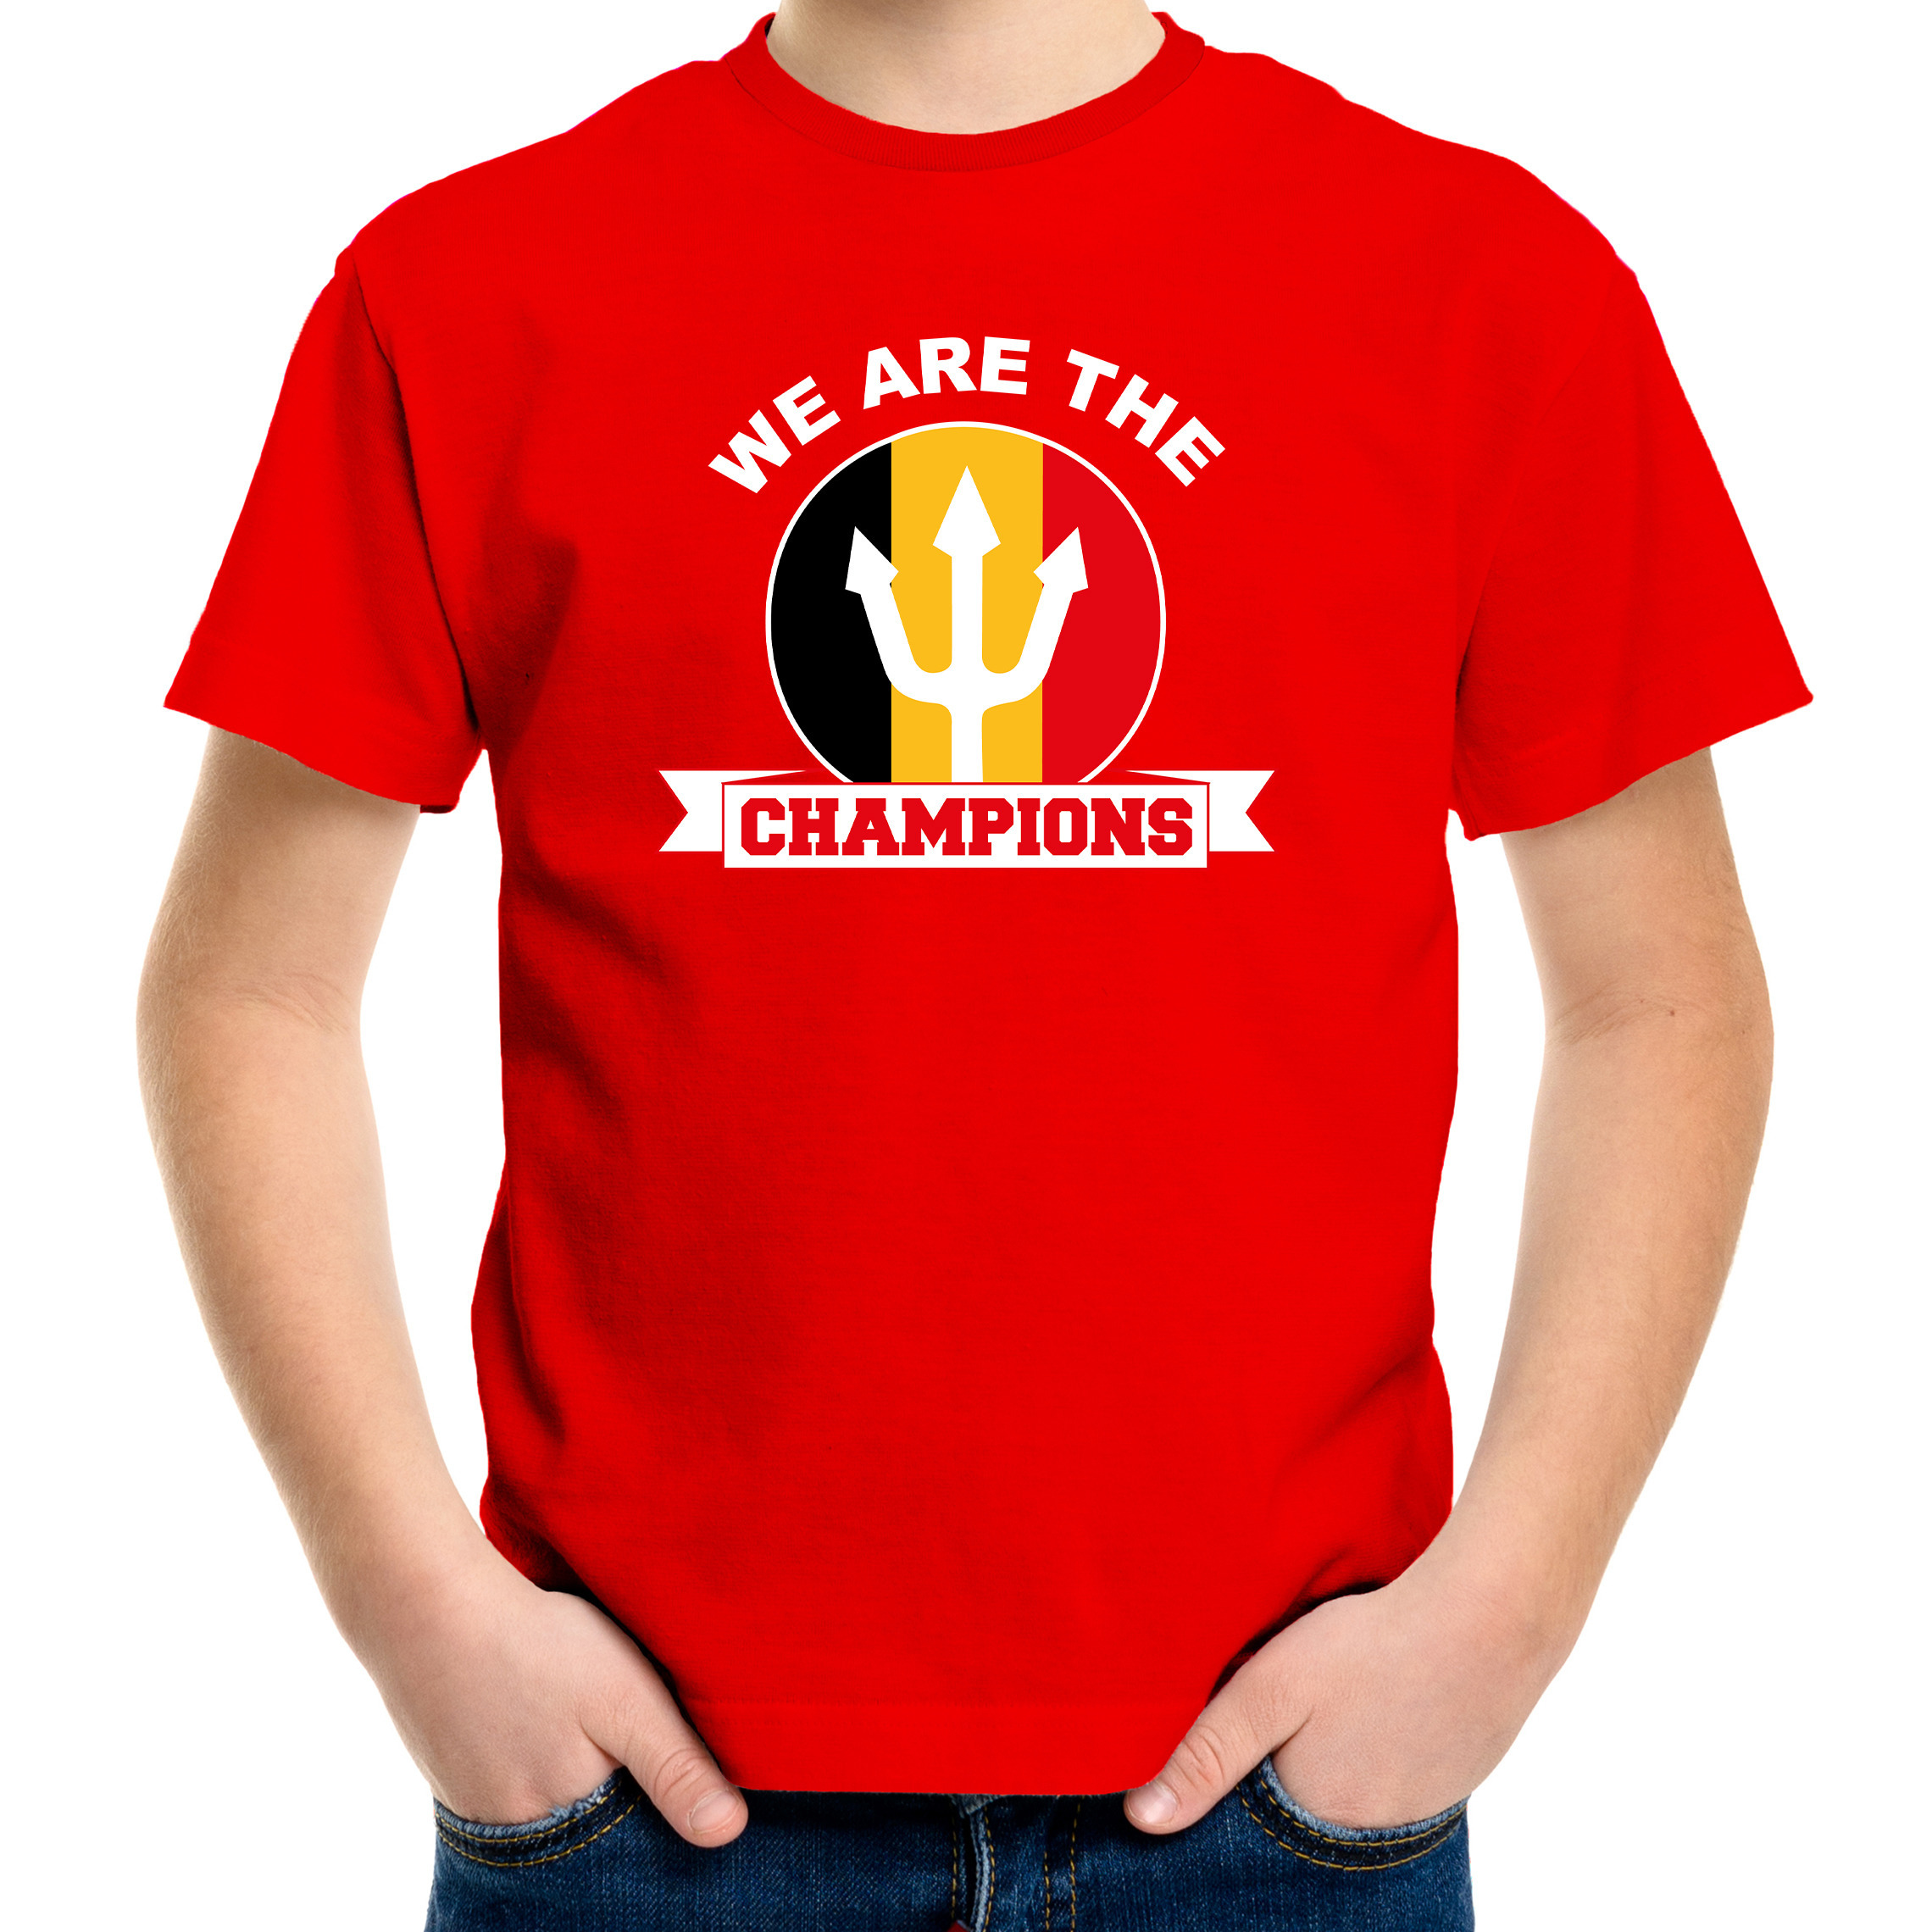 We are the champions rood t-shirt Belgie supporter EK/ WK voor kinderen